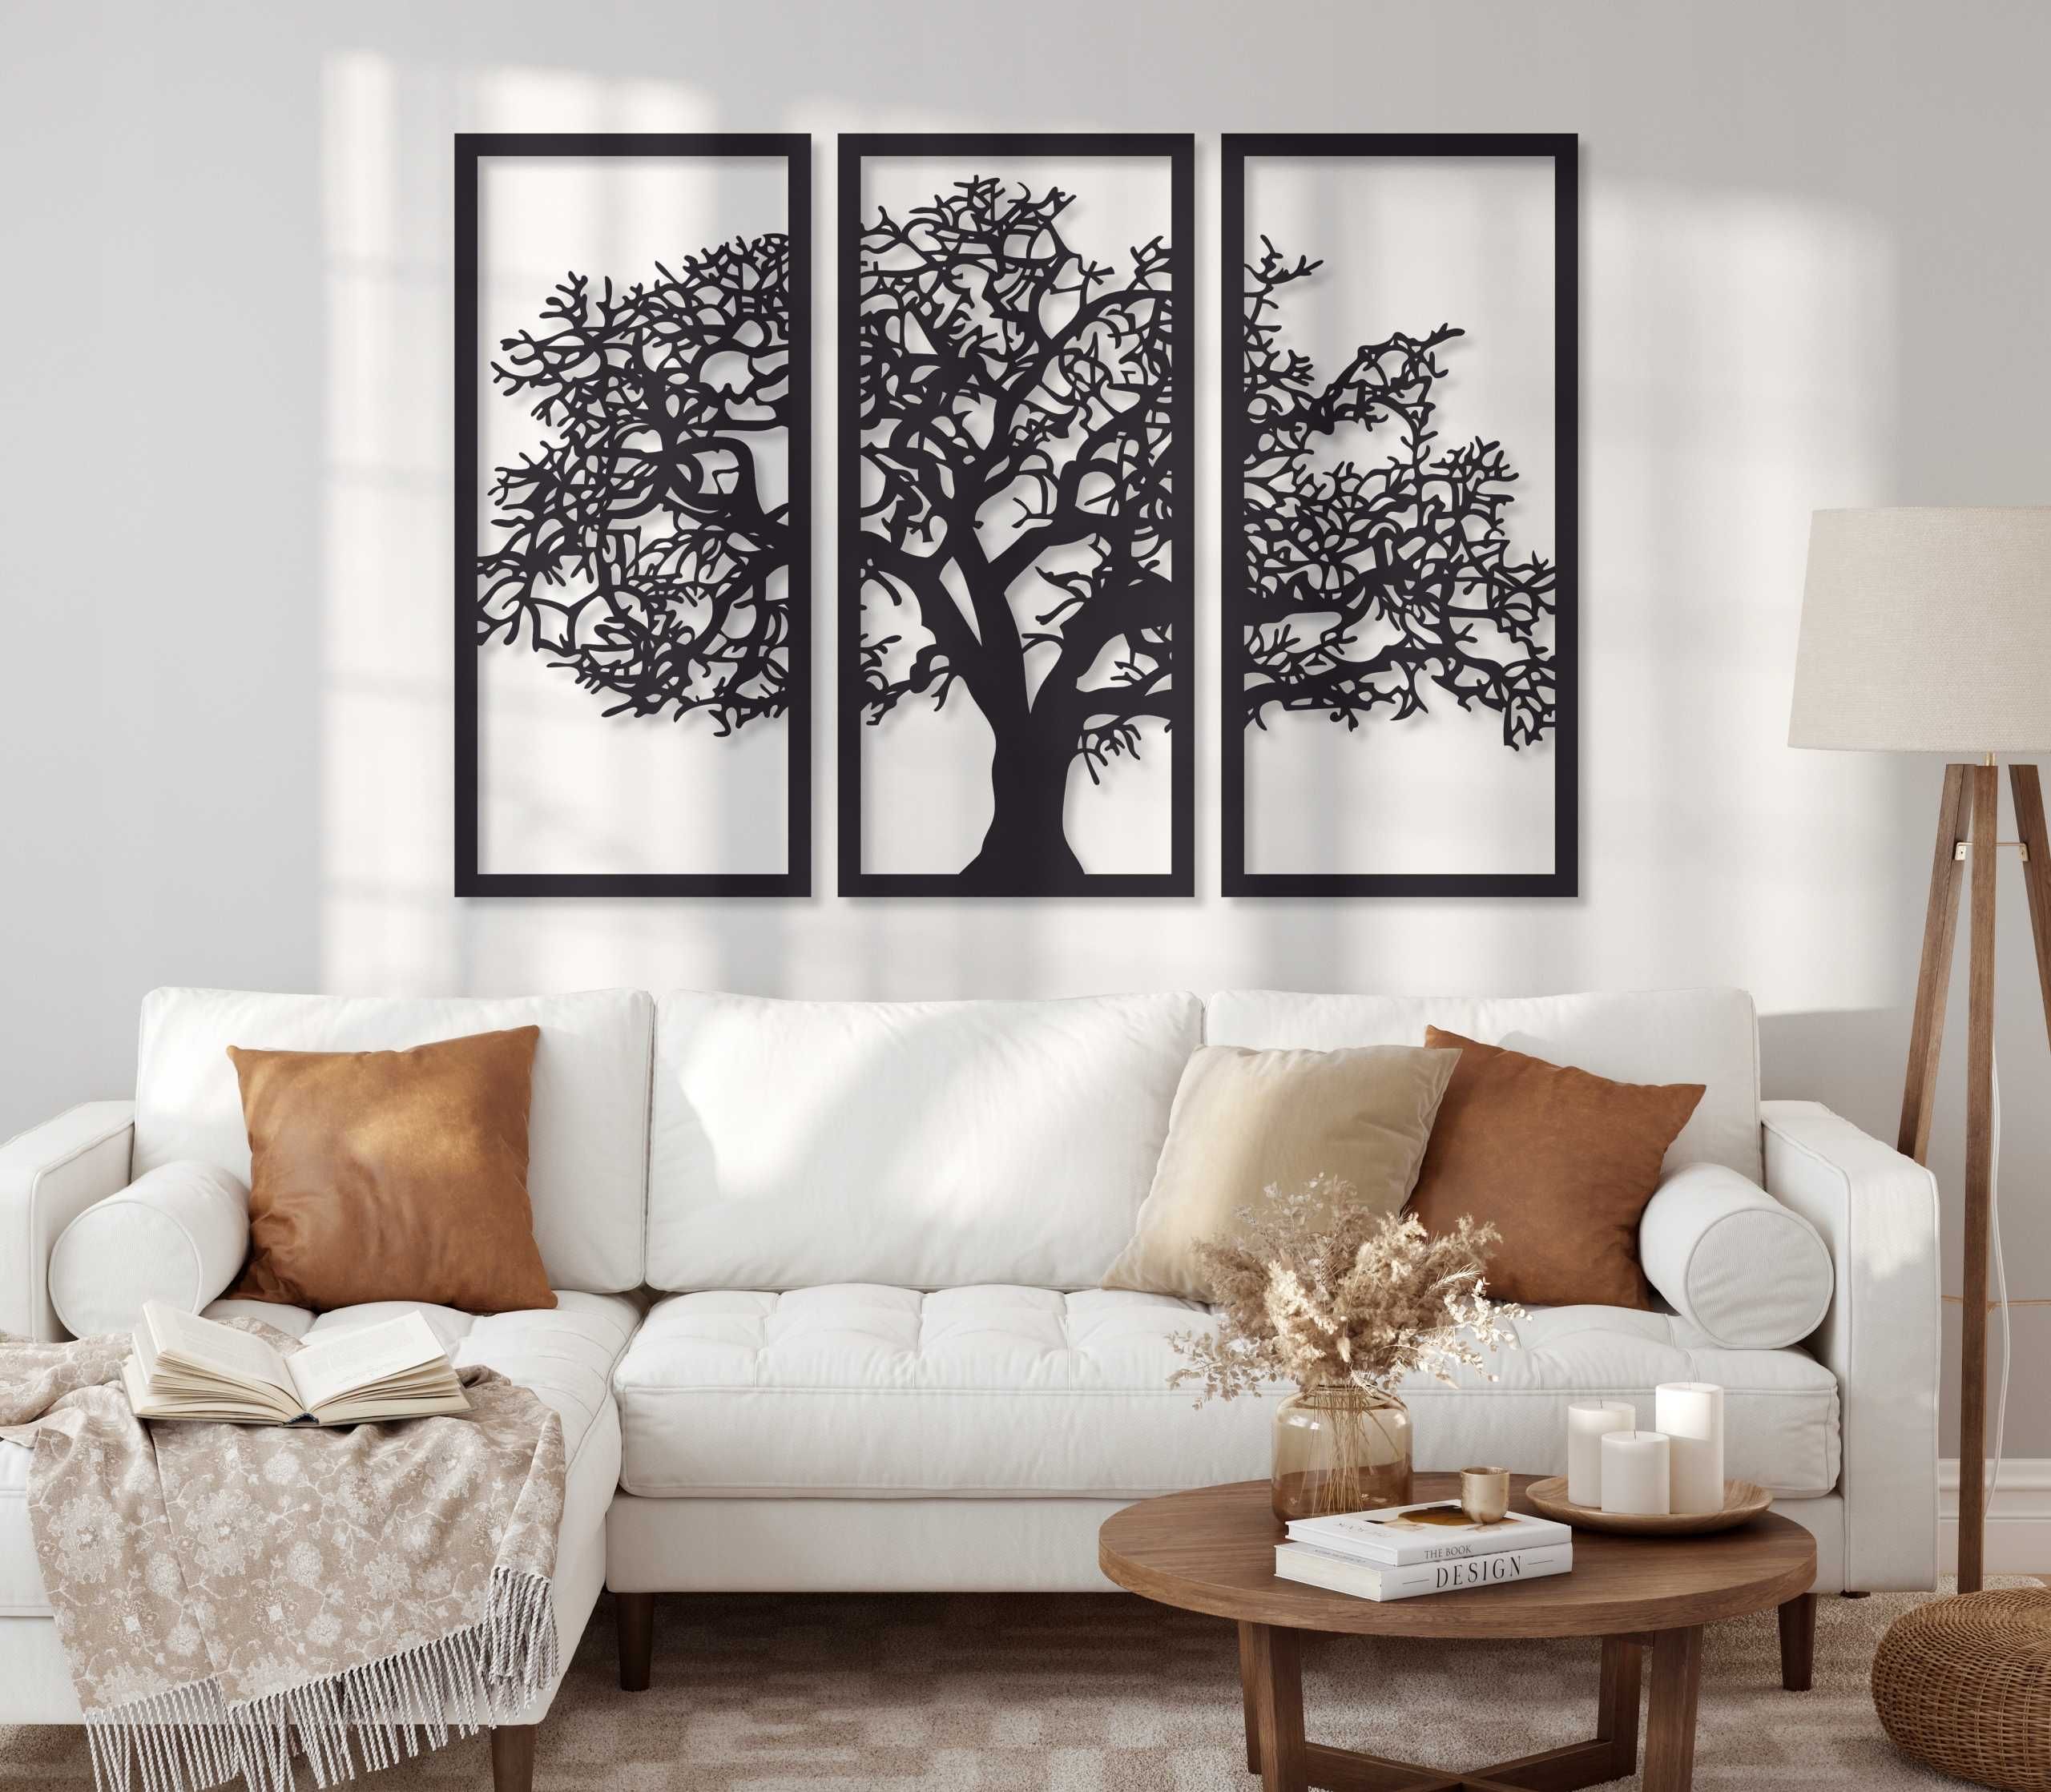 Obraz Ażurowy 3D Drzewo Drzewko ścianie Świetna Jakość *WYSYŁKA24H